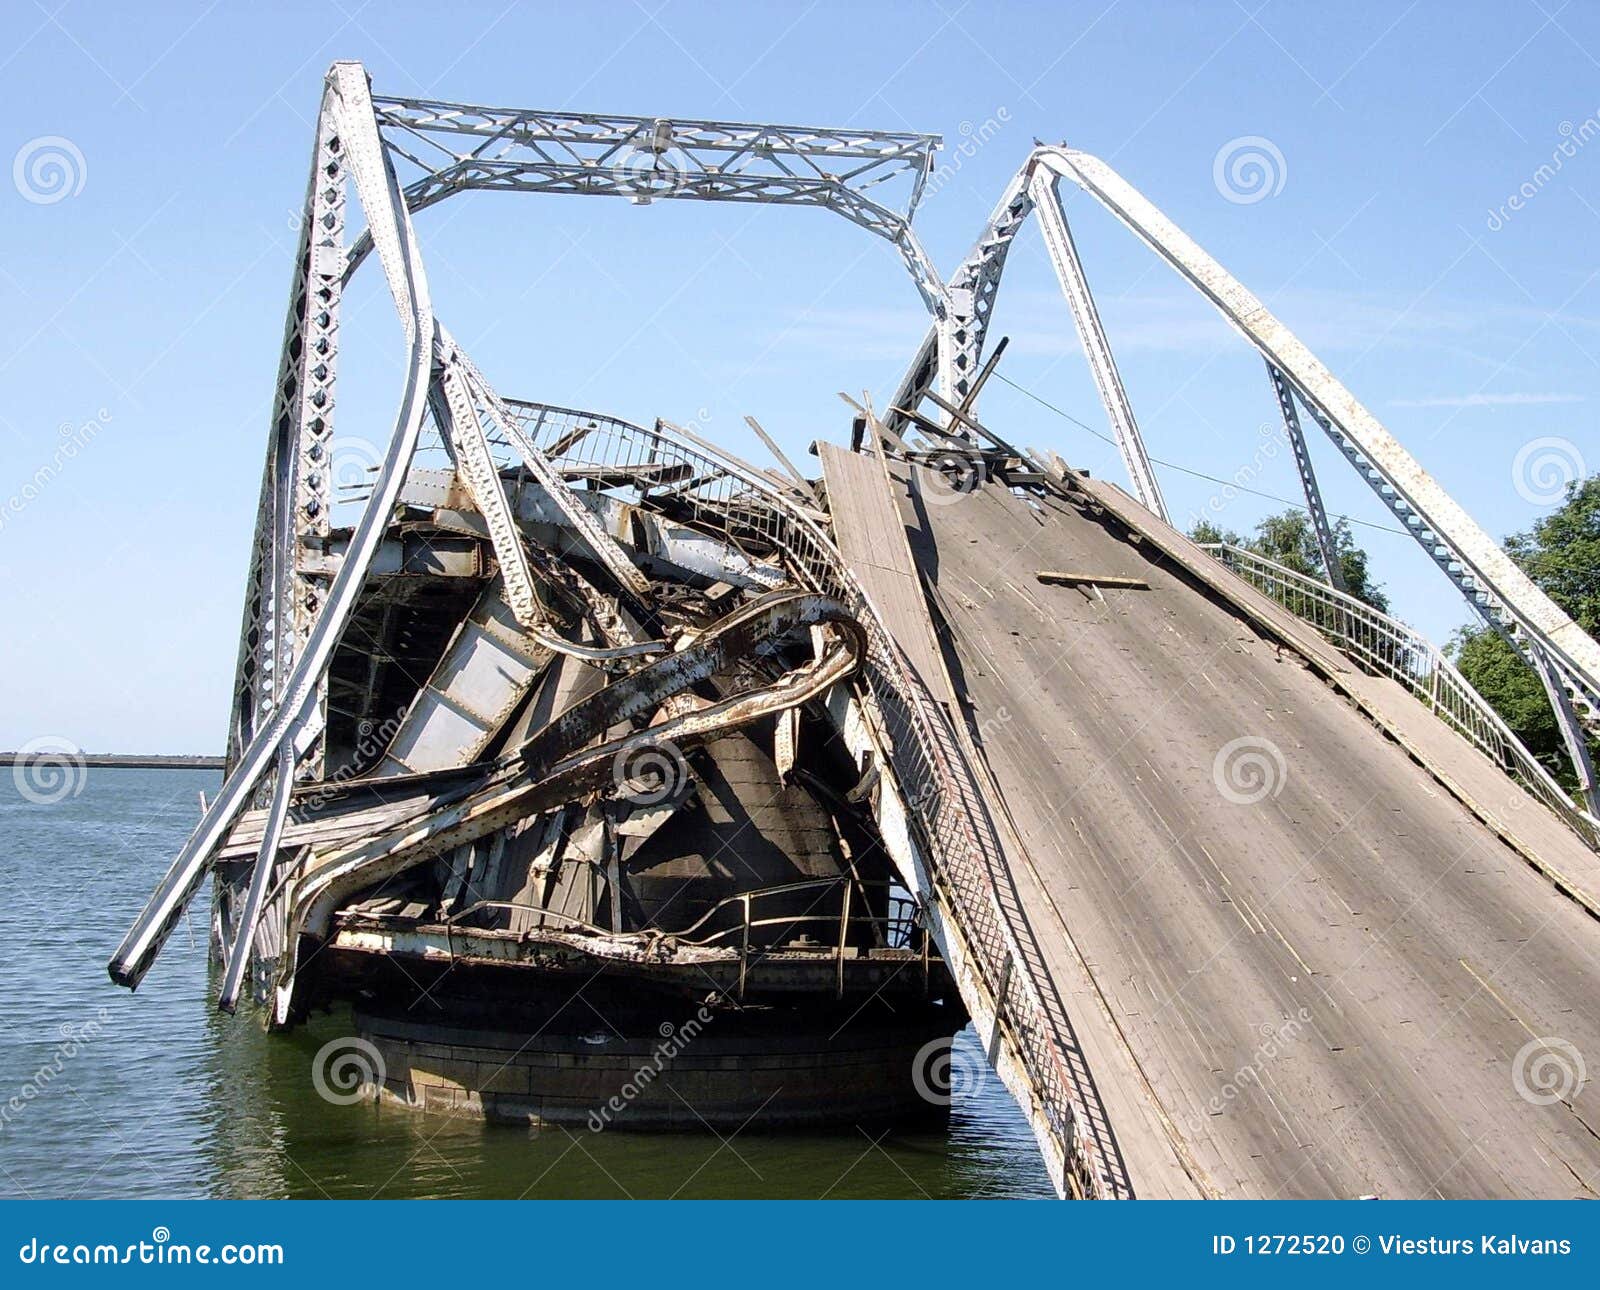 Корабль сломал мост. Мост в Затоке. Разрушение мостов для презентации. Разрушенные мостки. Разрушение моста деревянного.